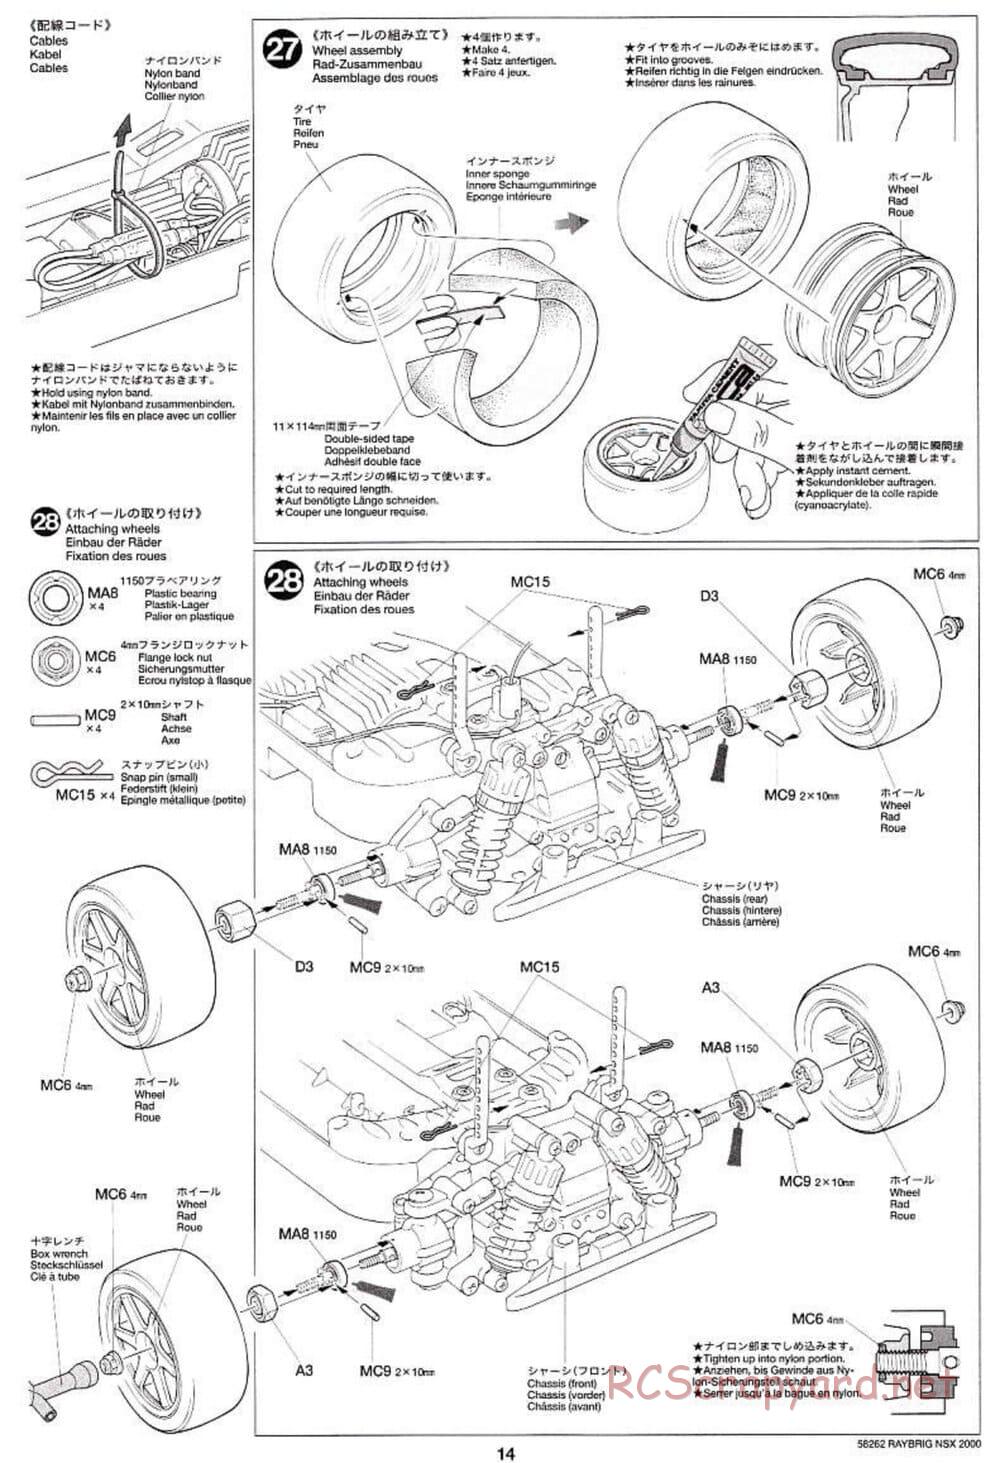 Tamiya - Raybrig NSX 2000 - TB-01 Chassis - Manual - Page 14